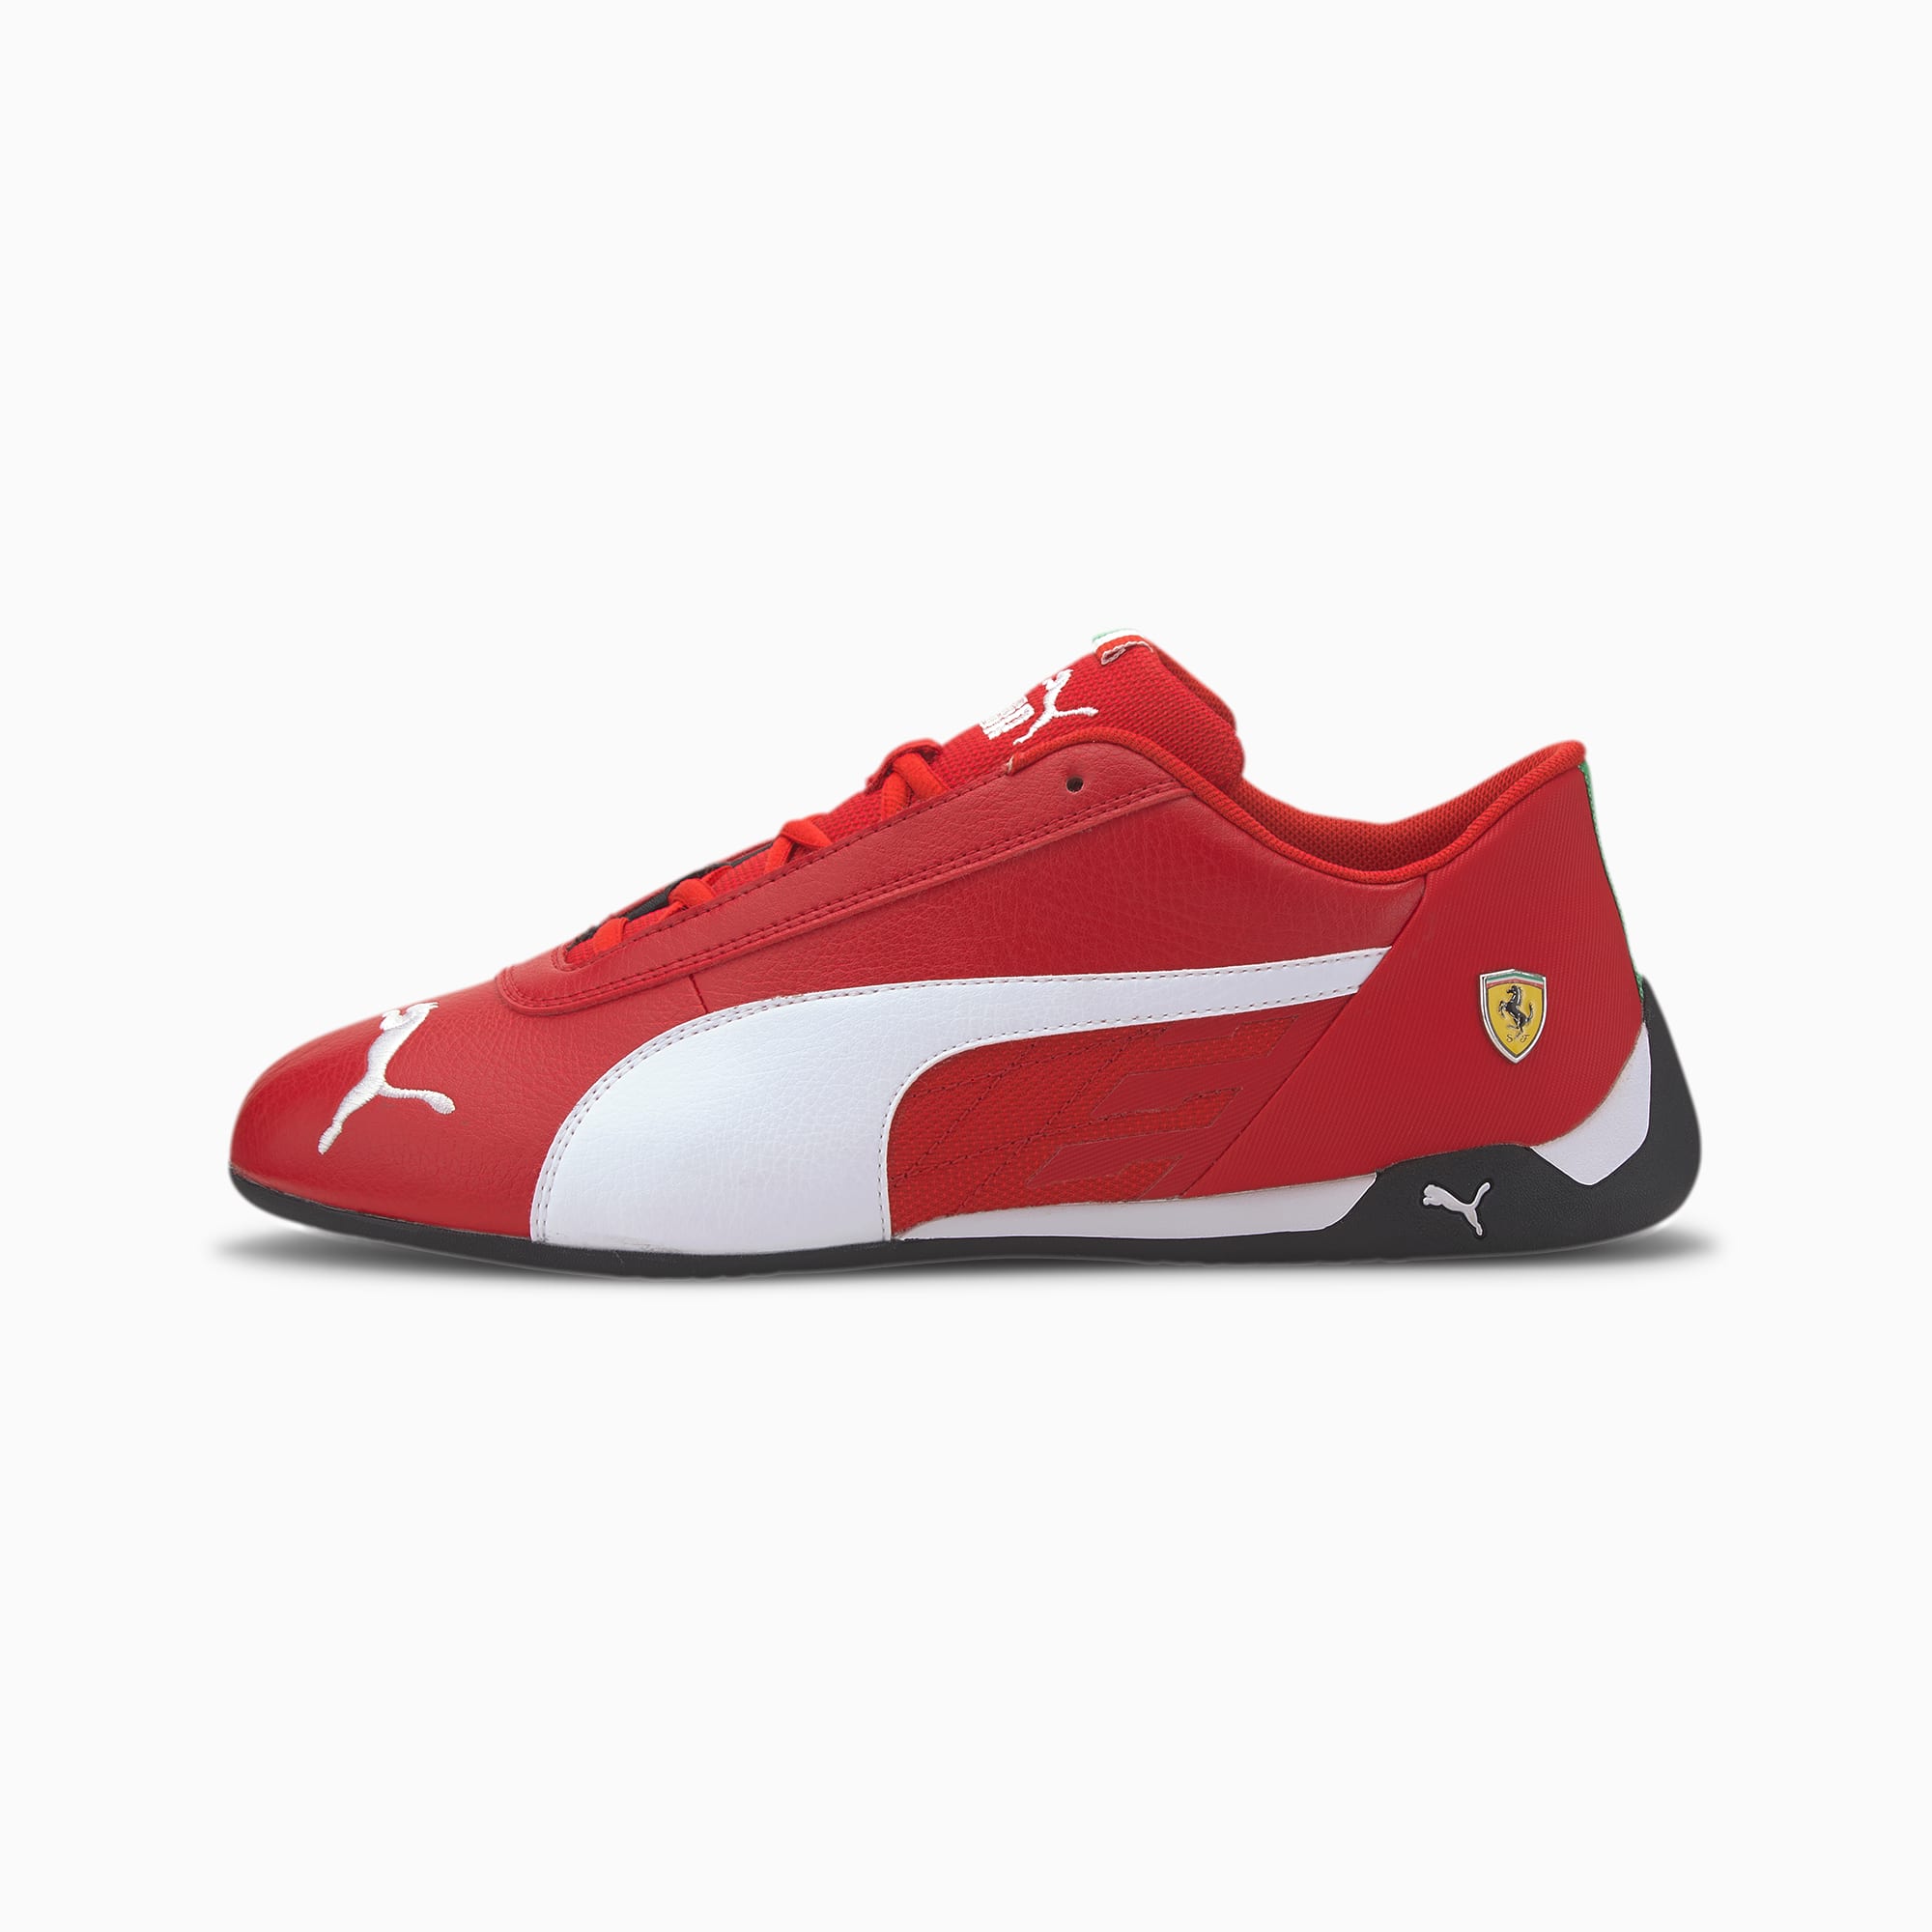 puma rosso corsa shoes